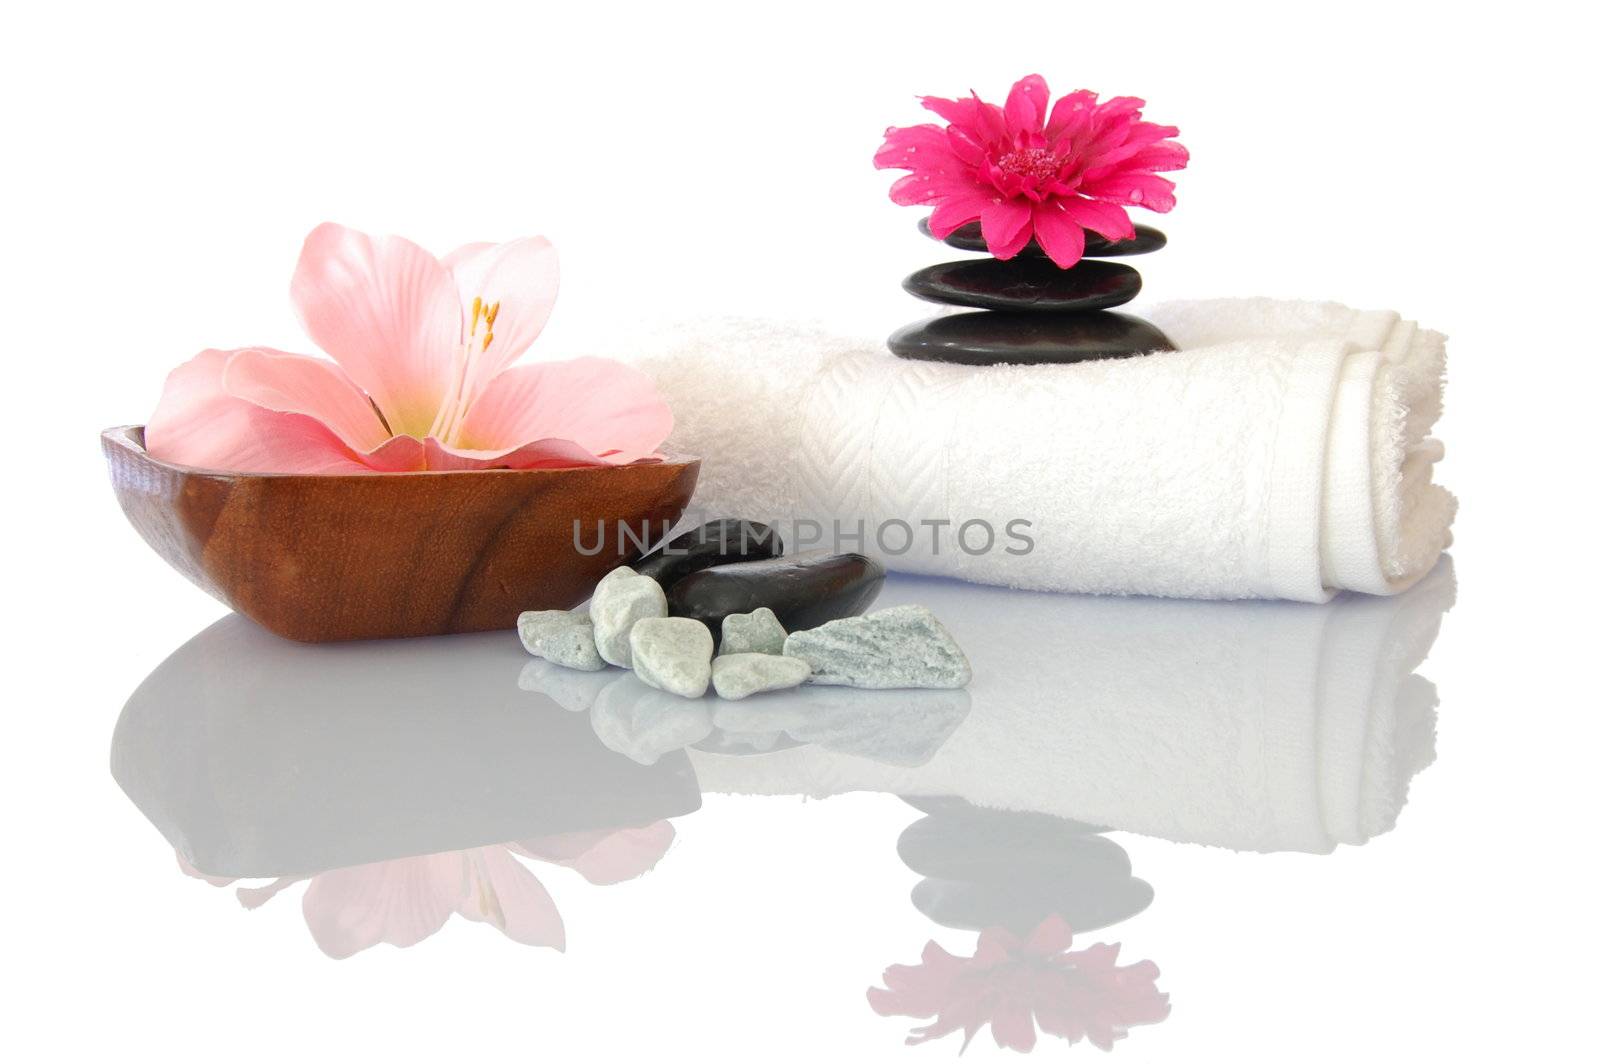 wellness zen and spa by gunnar3000